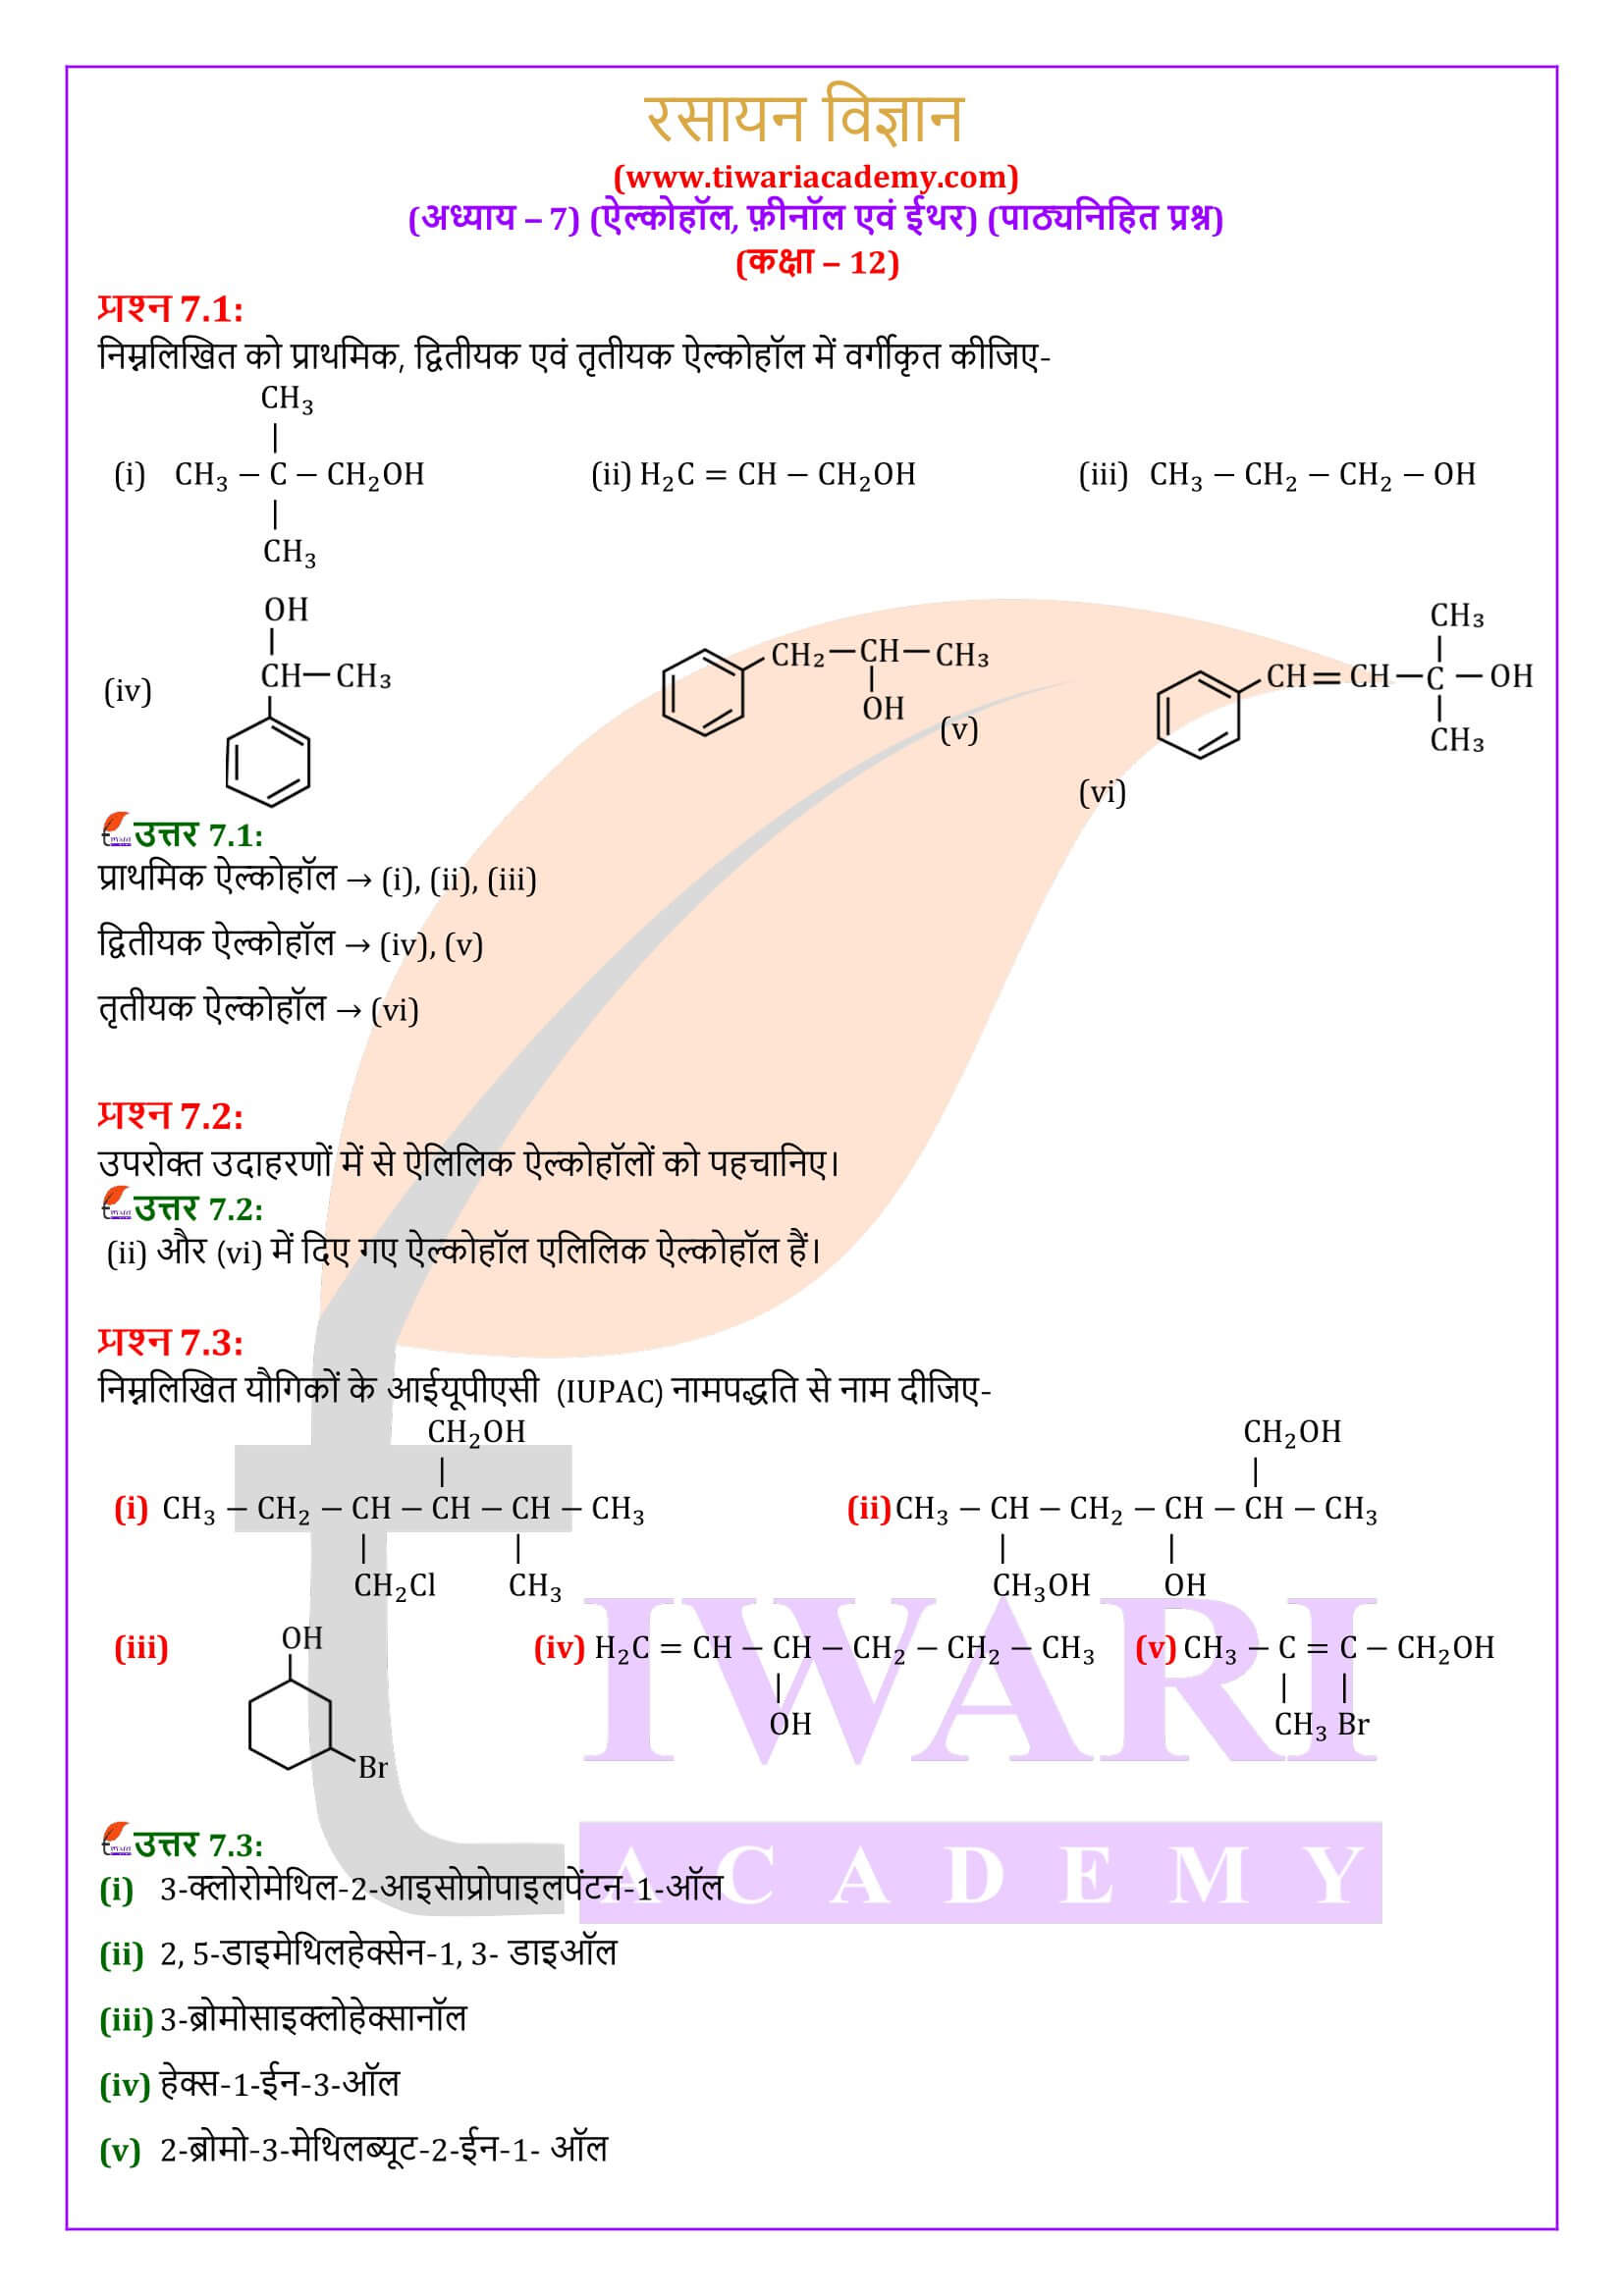 कक्षा 12 रसायन विज्ञान अध्याय 7 पाठ्यनिहित